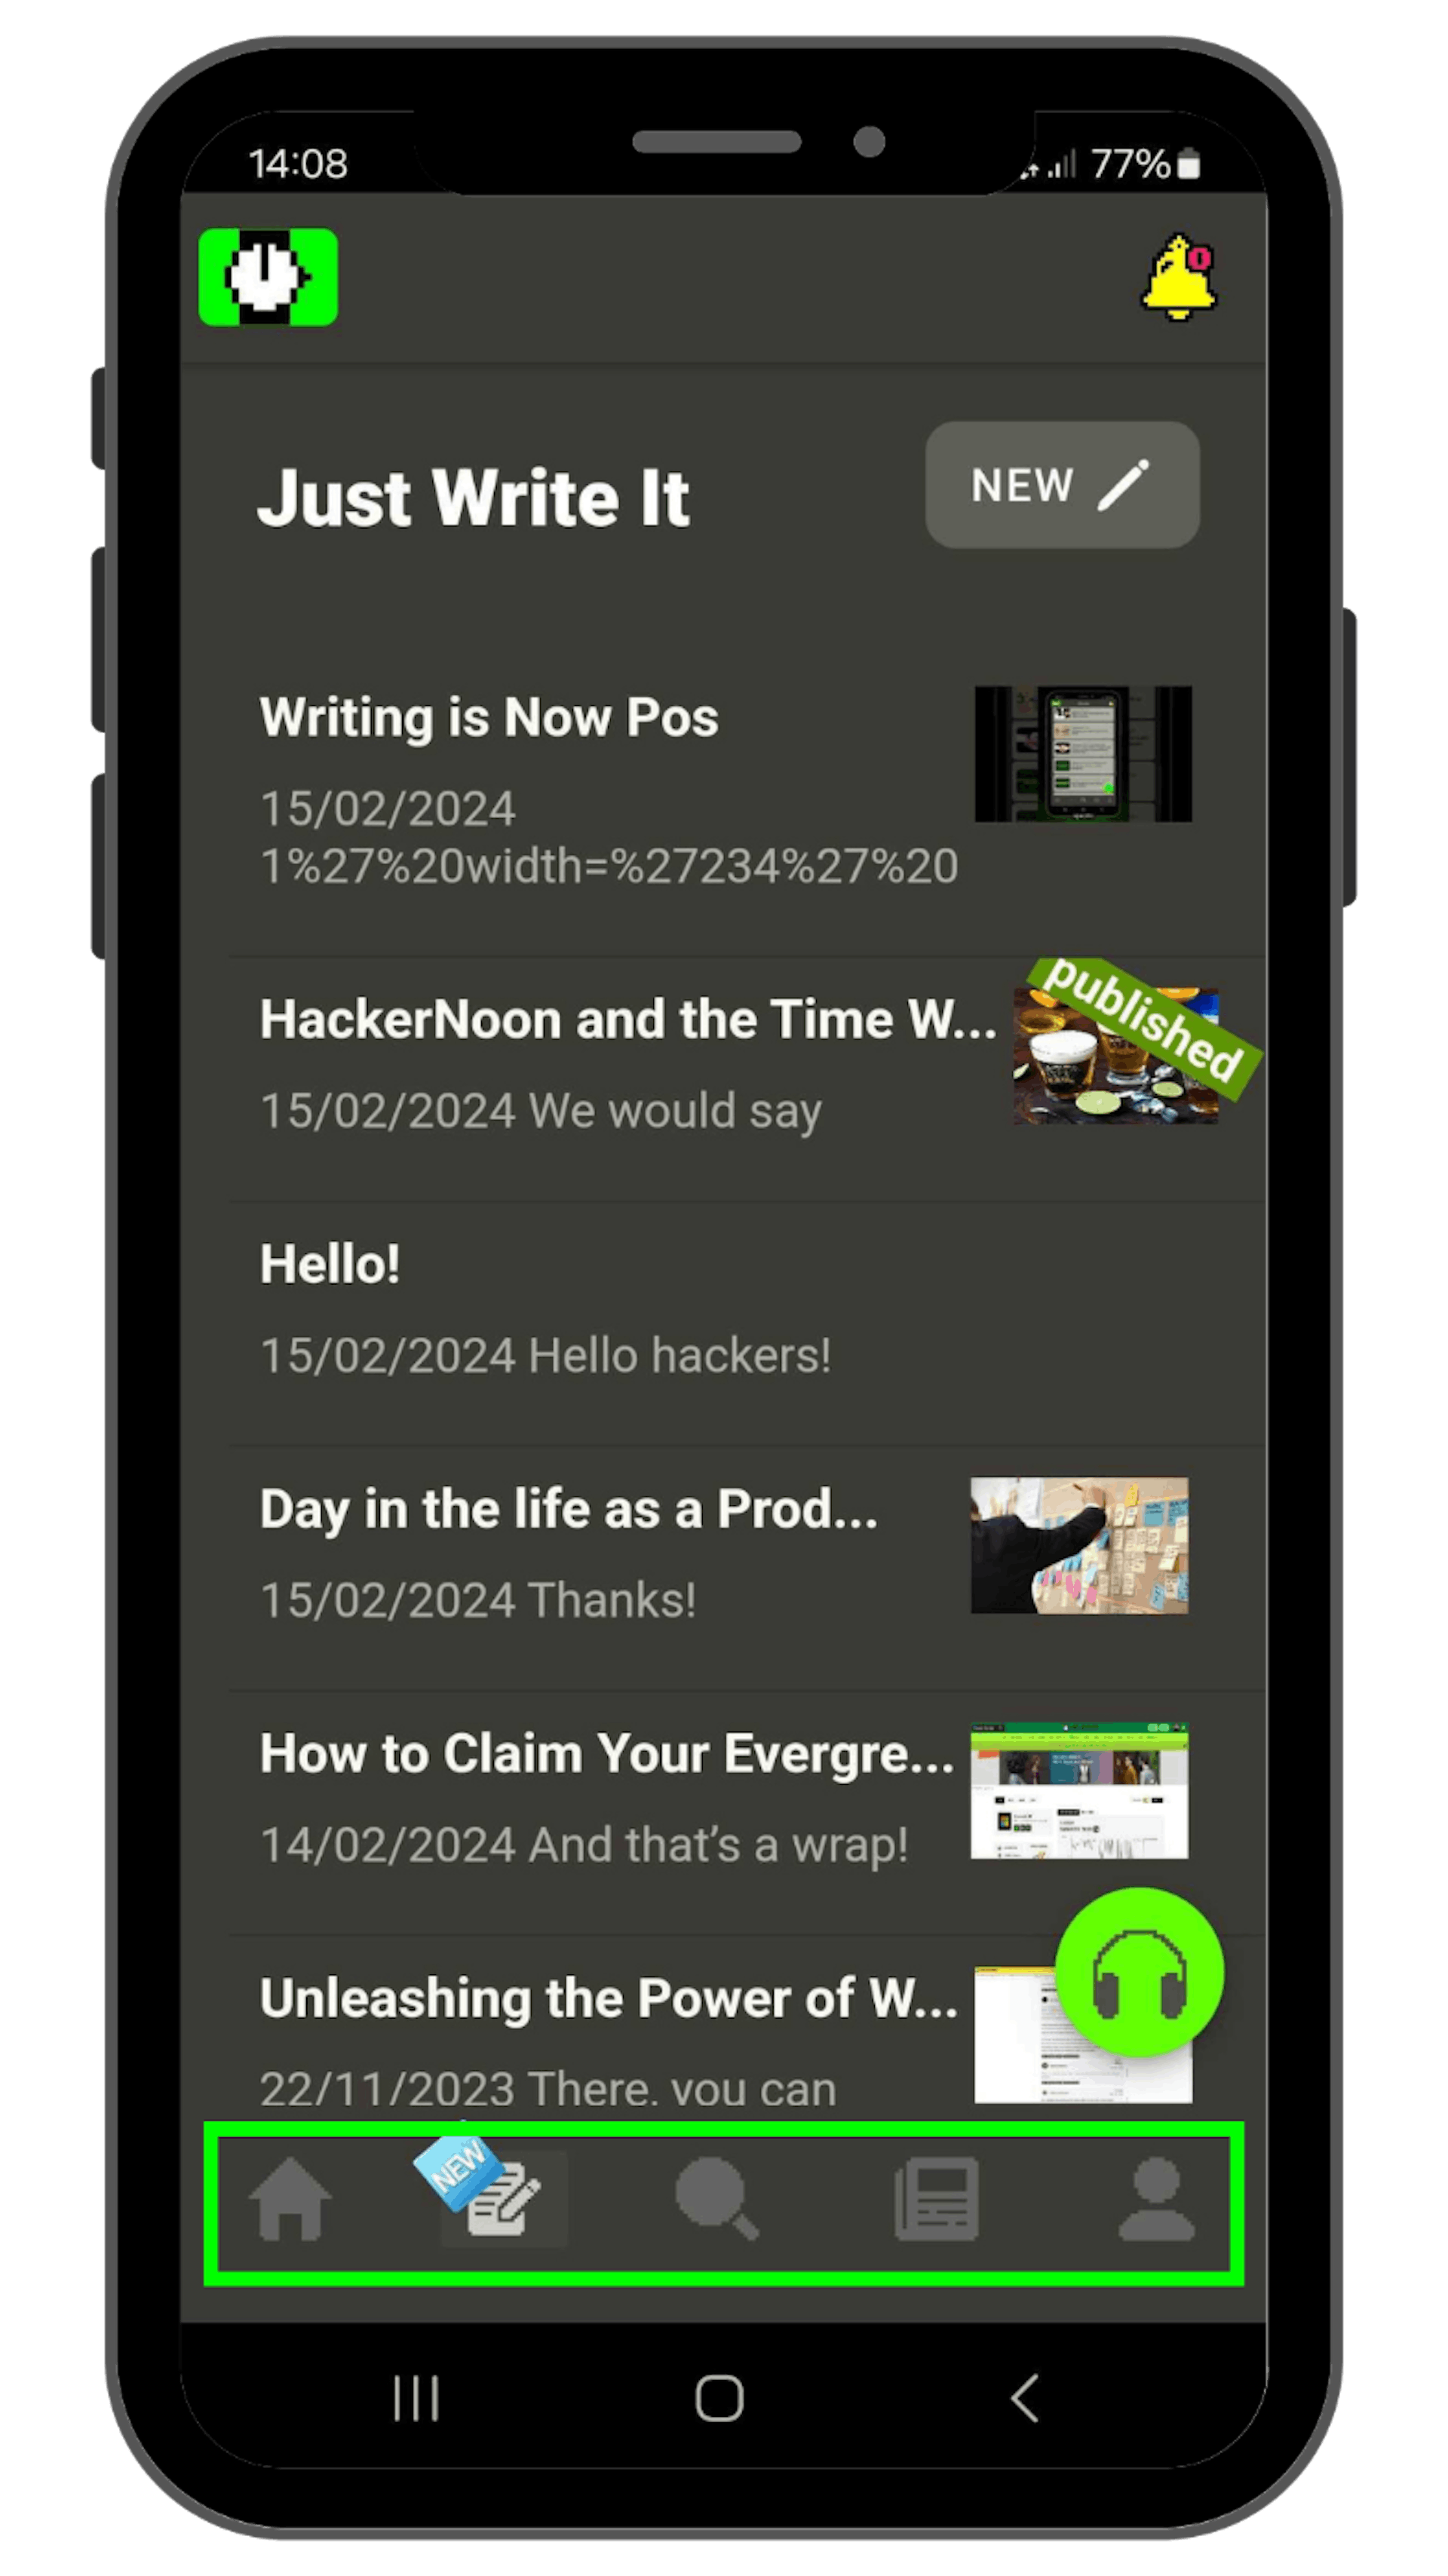 HackerNoon 앱의 새로운 픽셀화 아이콘